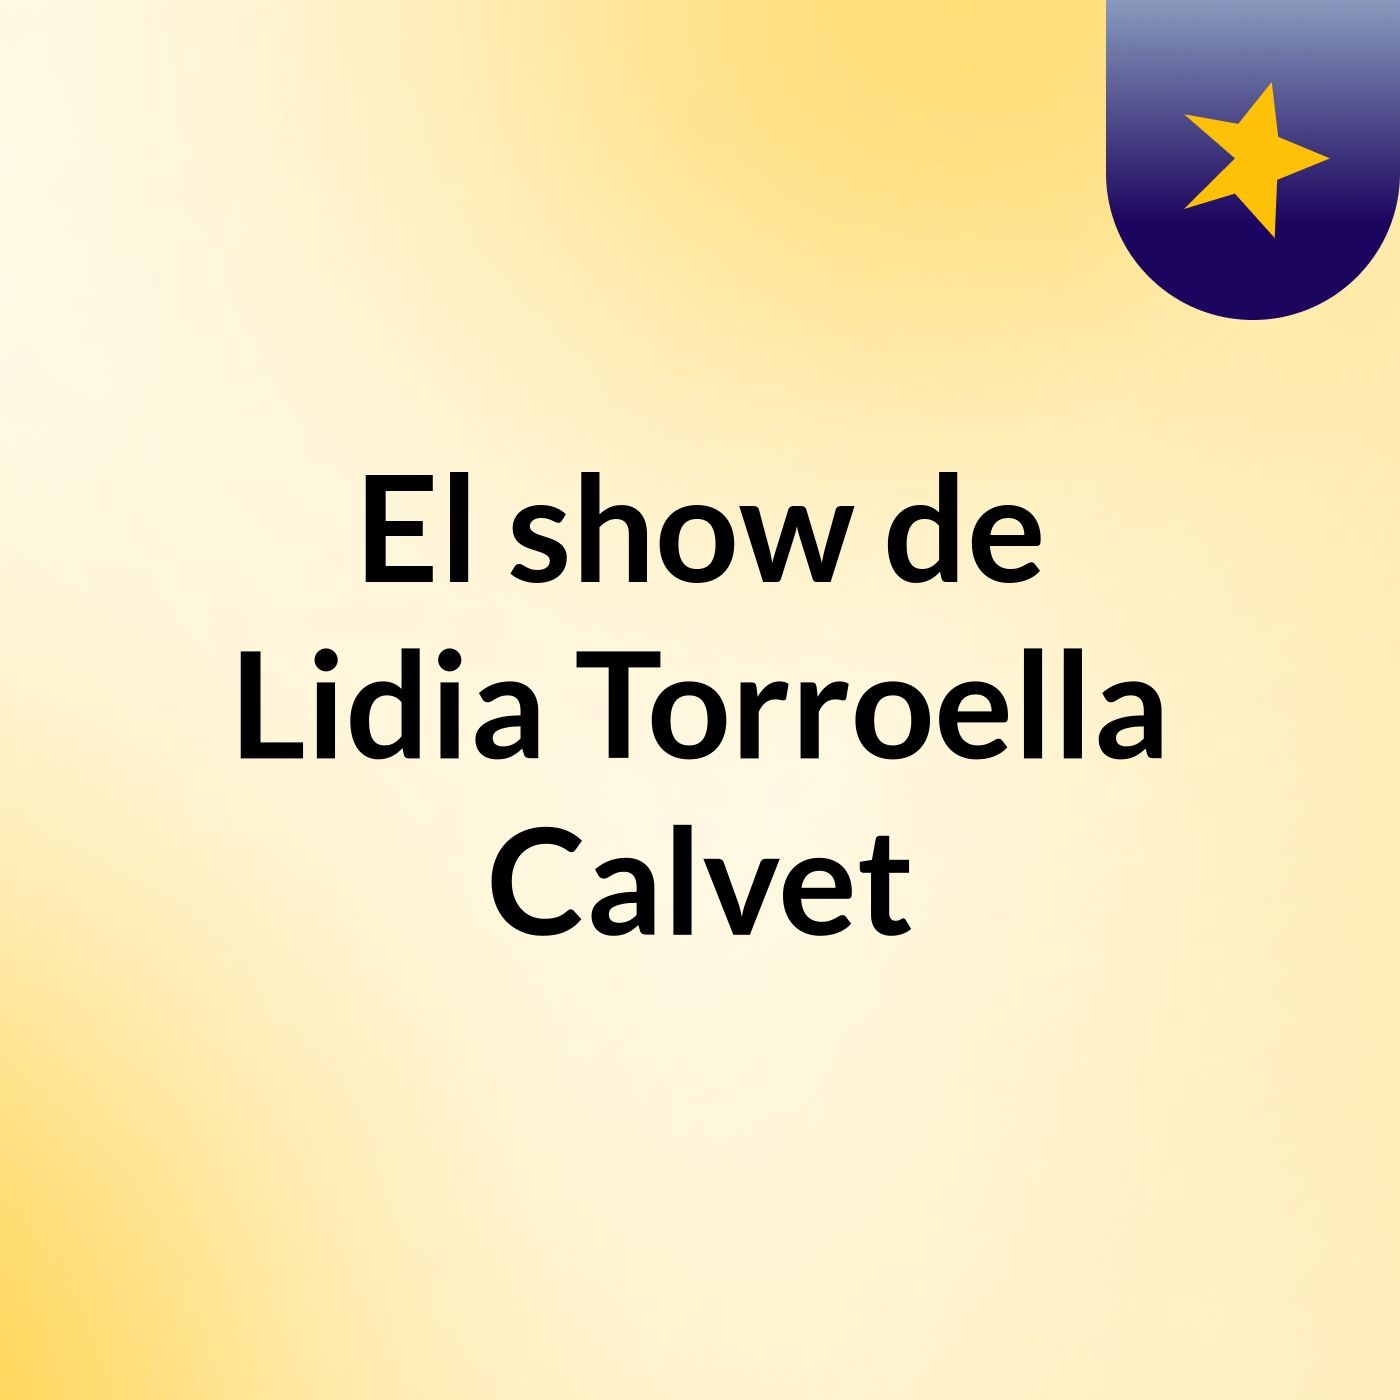 El show de Lidia Torroella Calvet